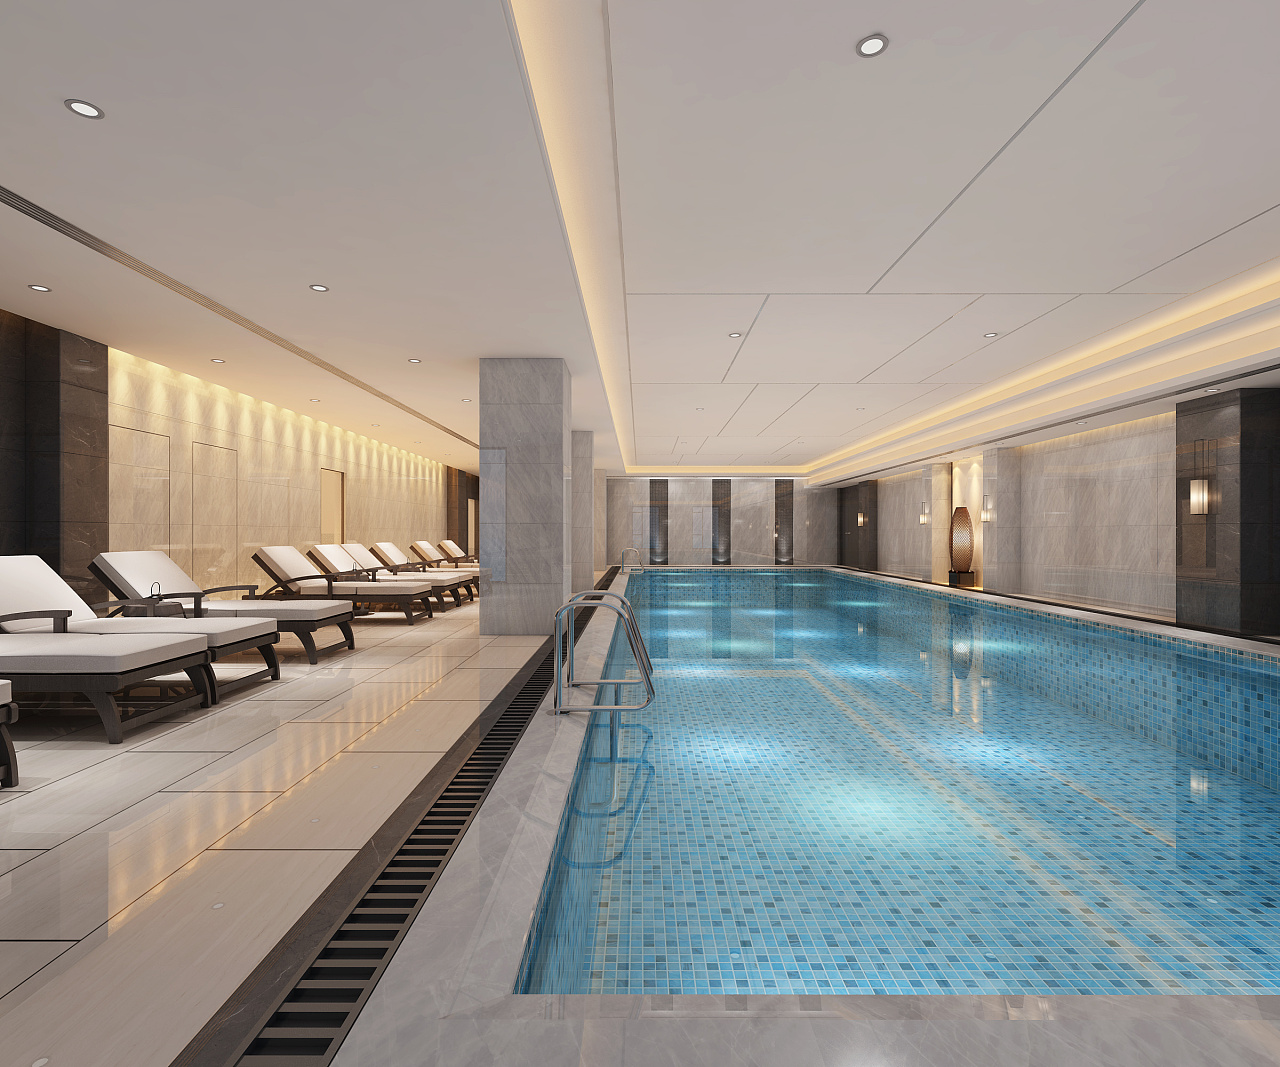 [室内游泳池]一个五星级酒店室内游泳池的装修 - 土木在线